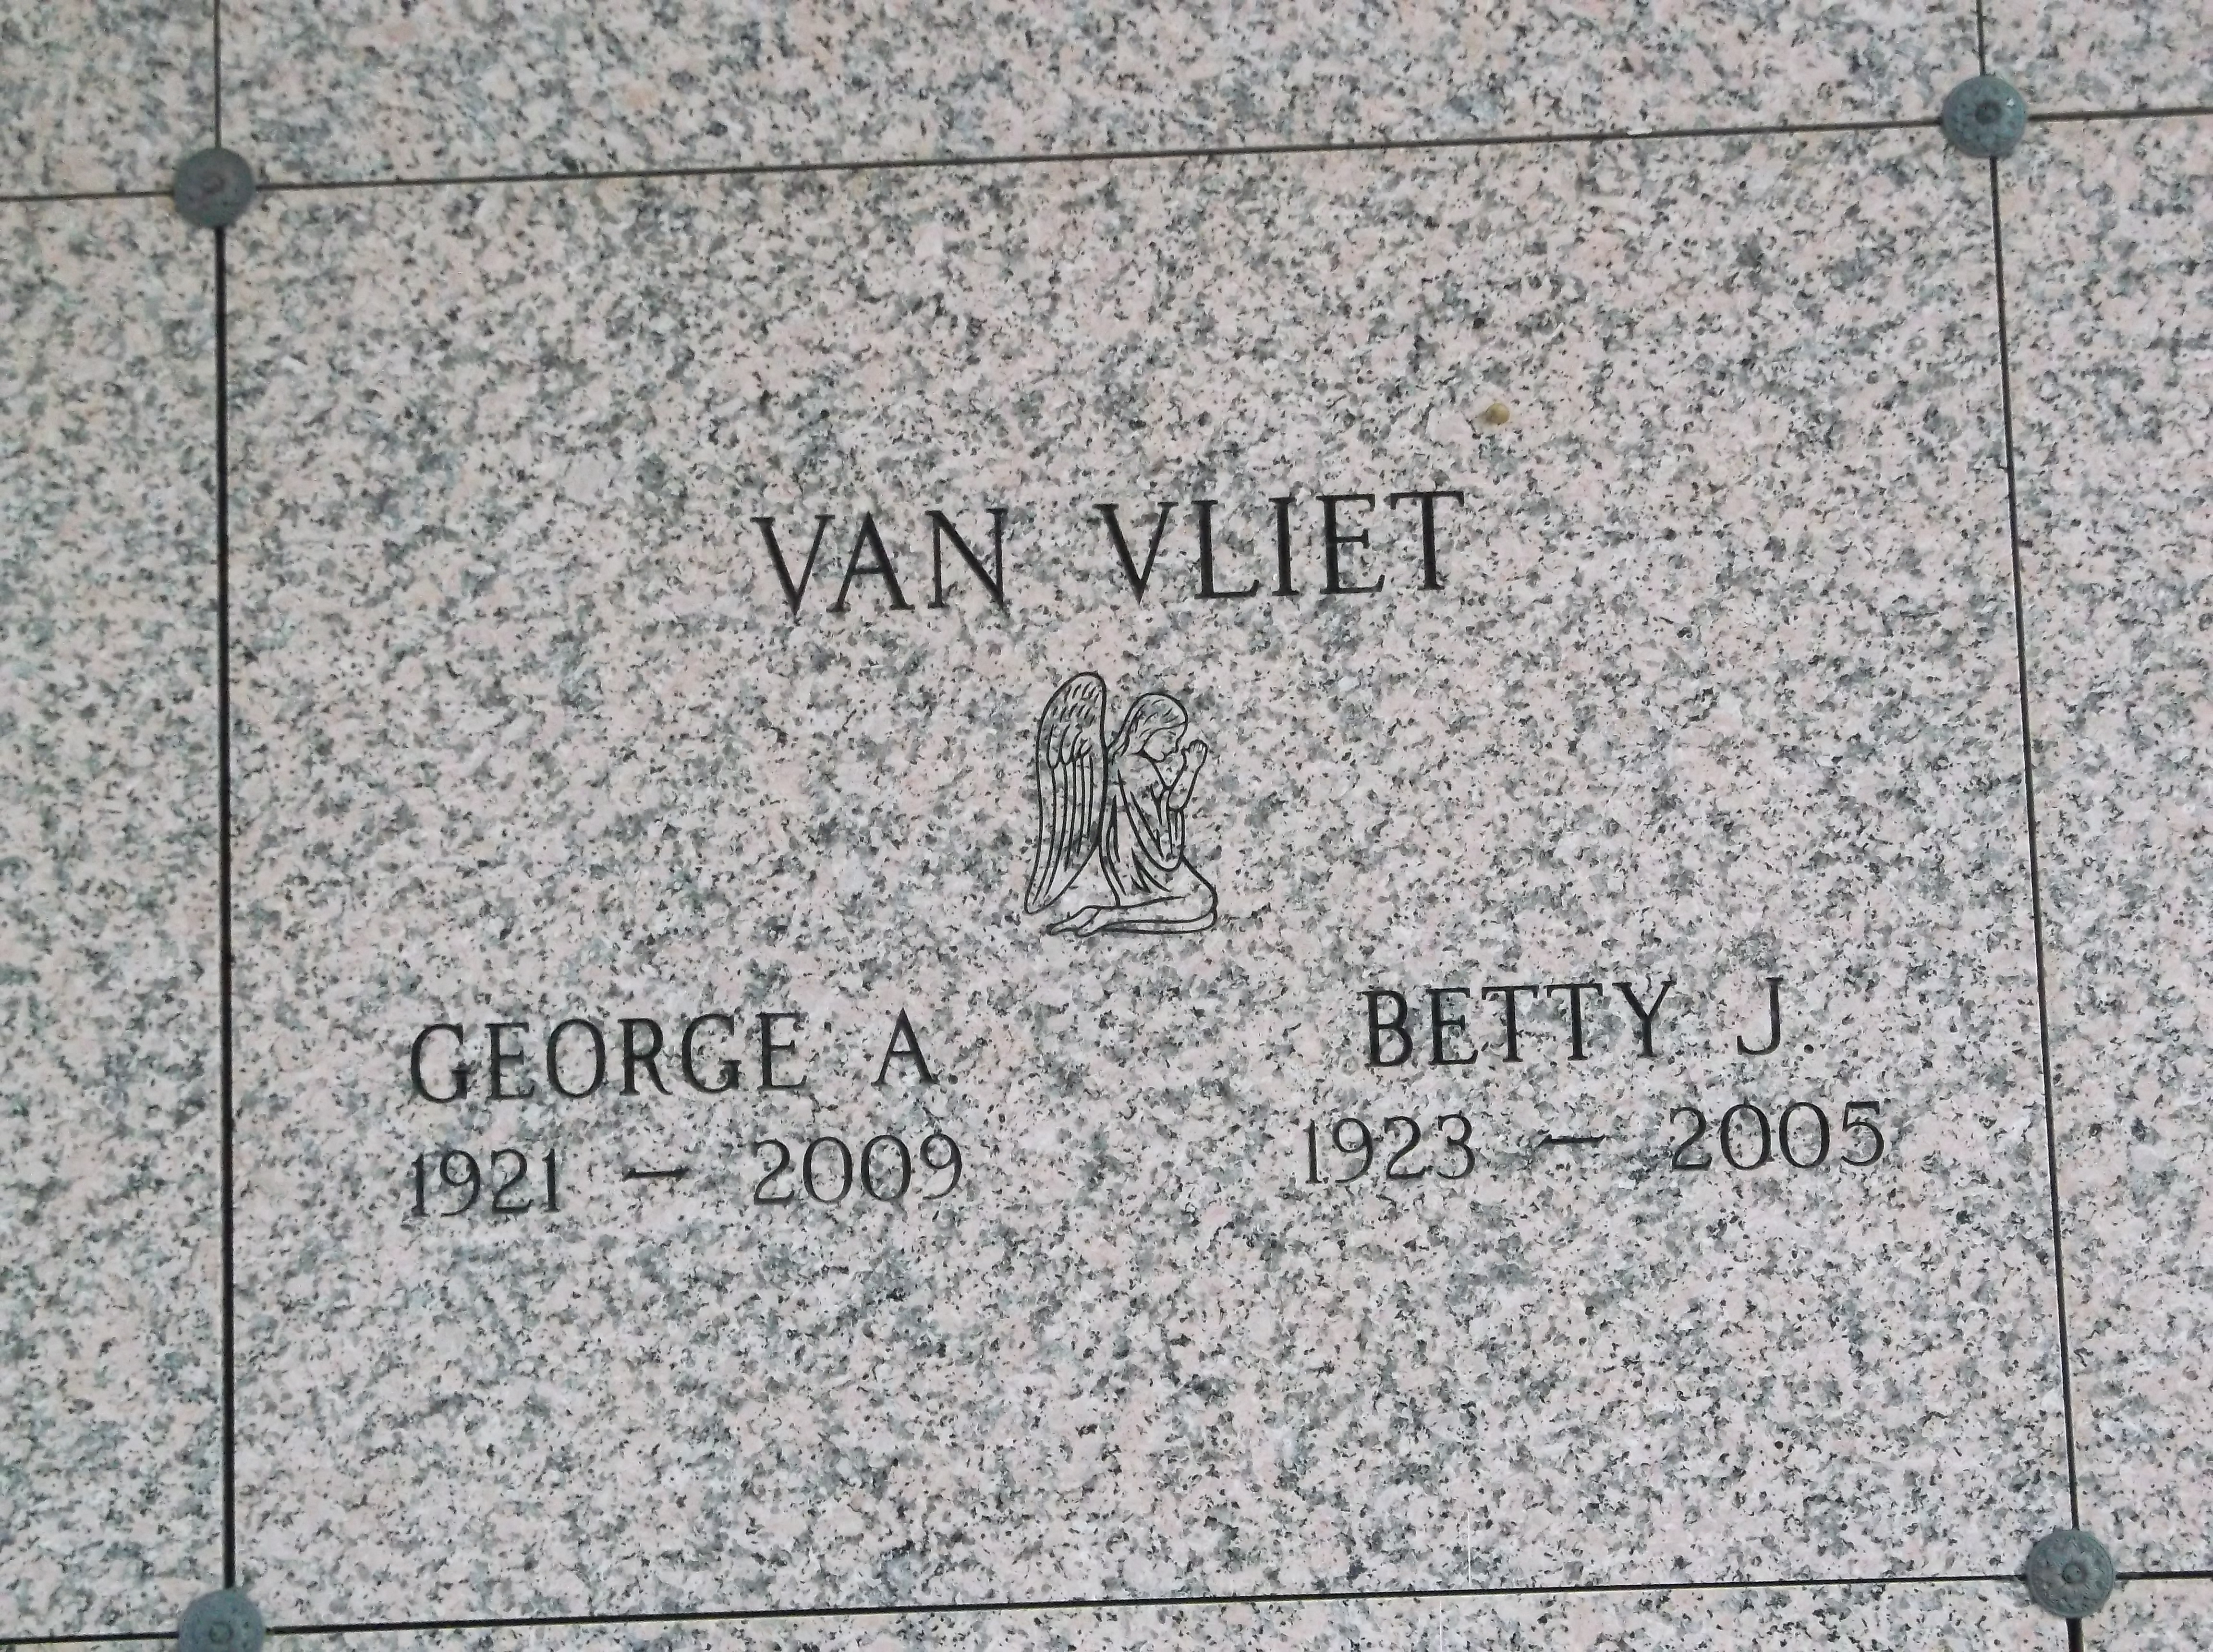 George A Van Vliet